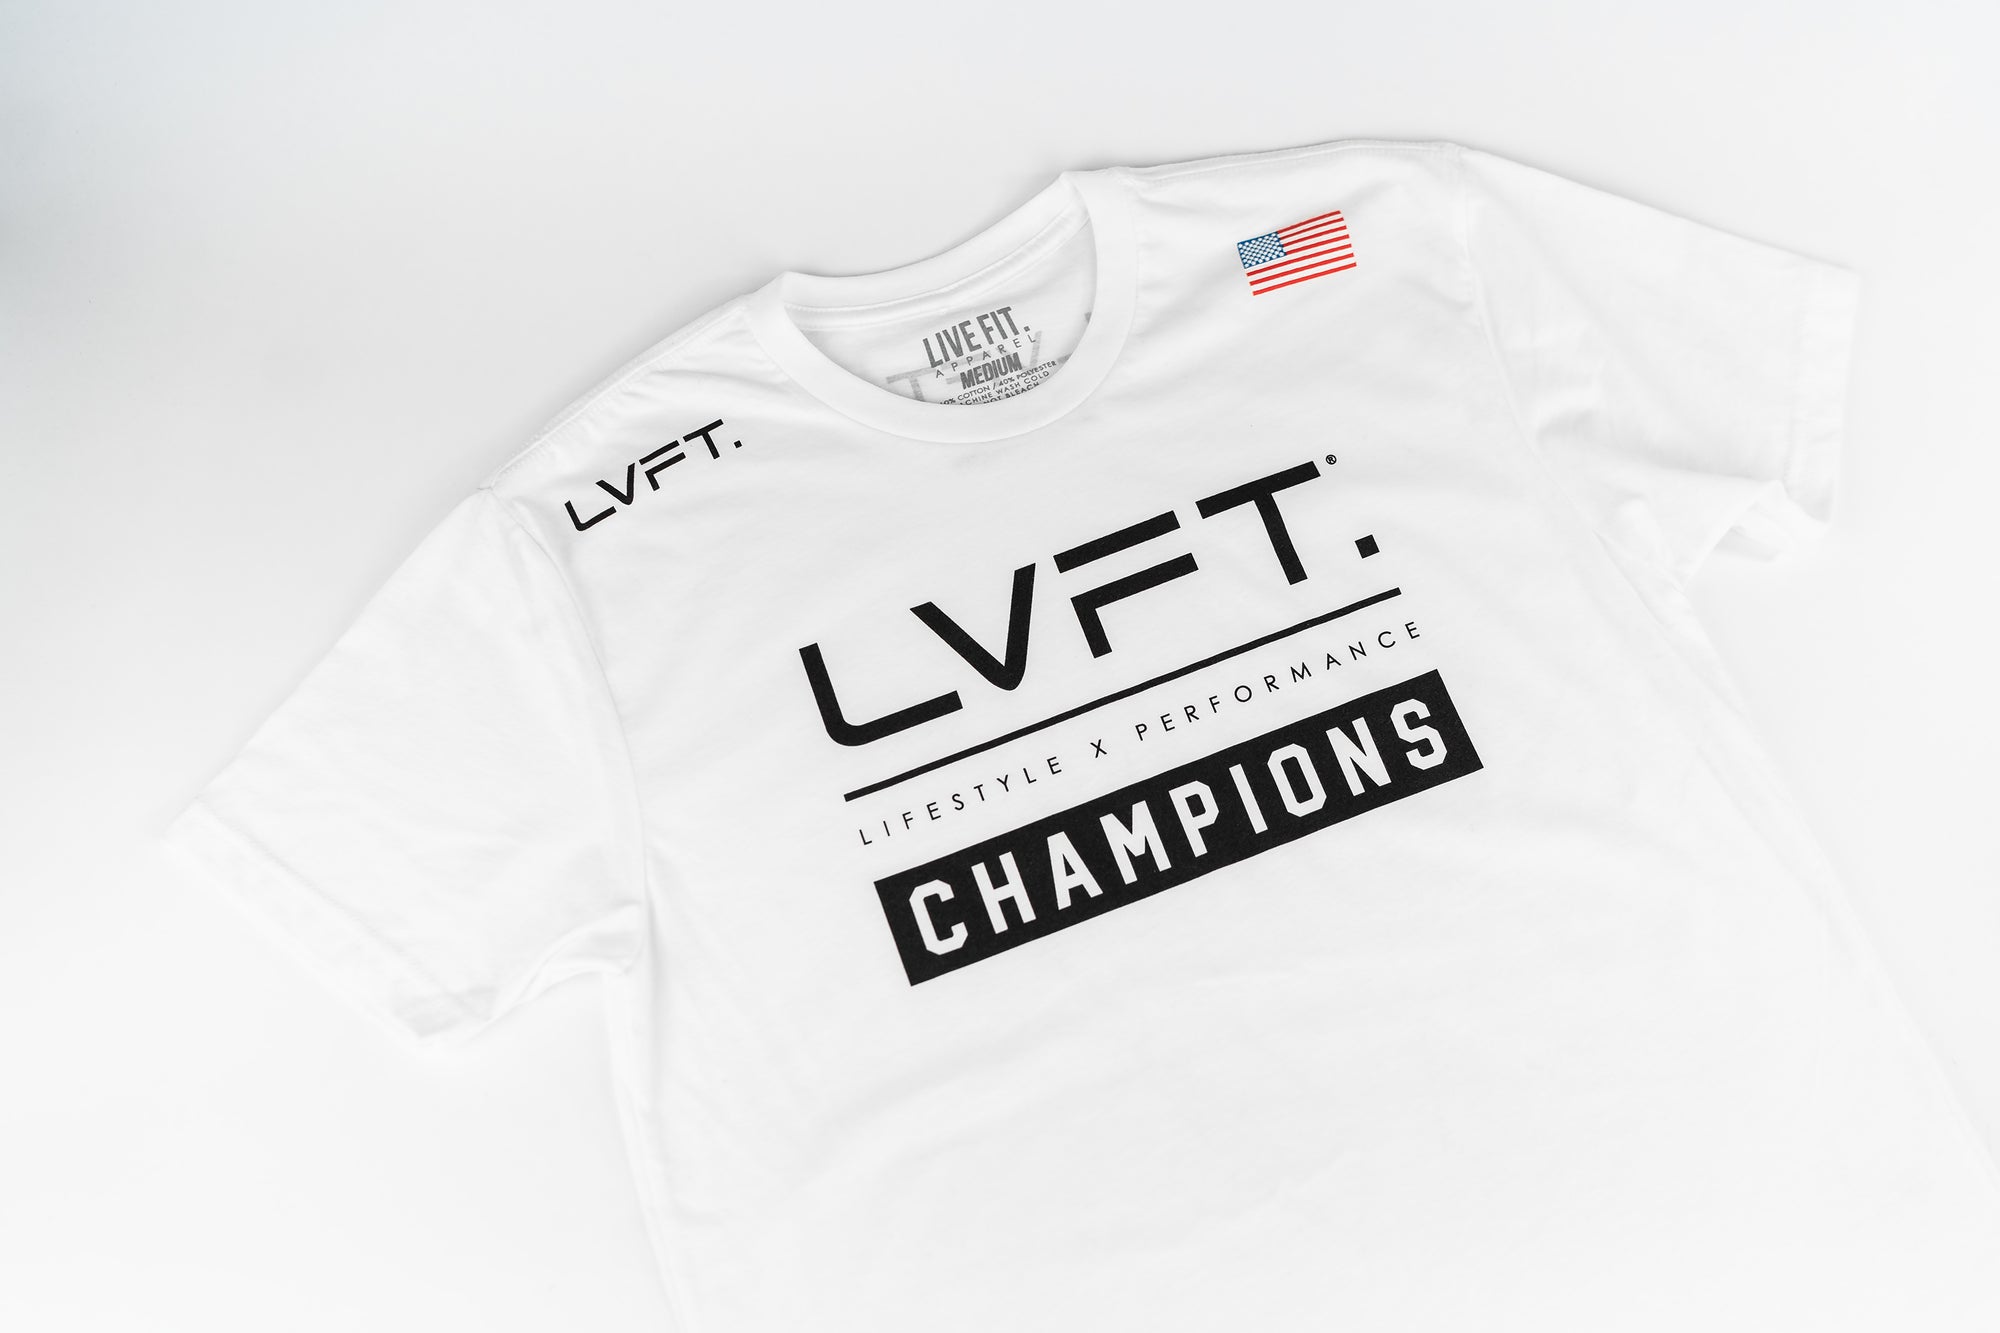 Team LVFT Tee - White